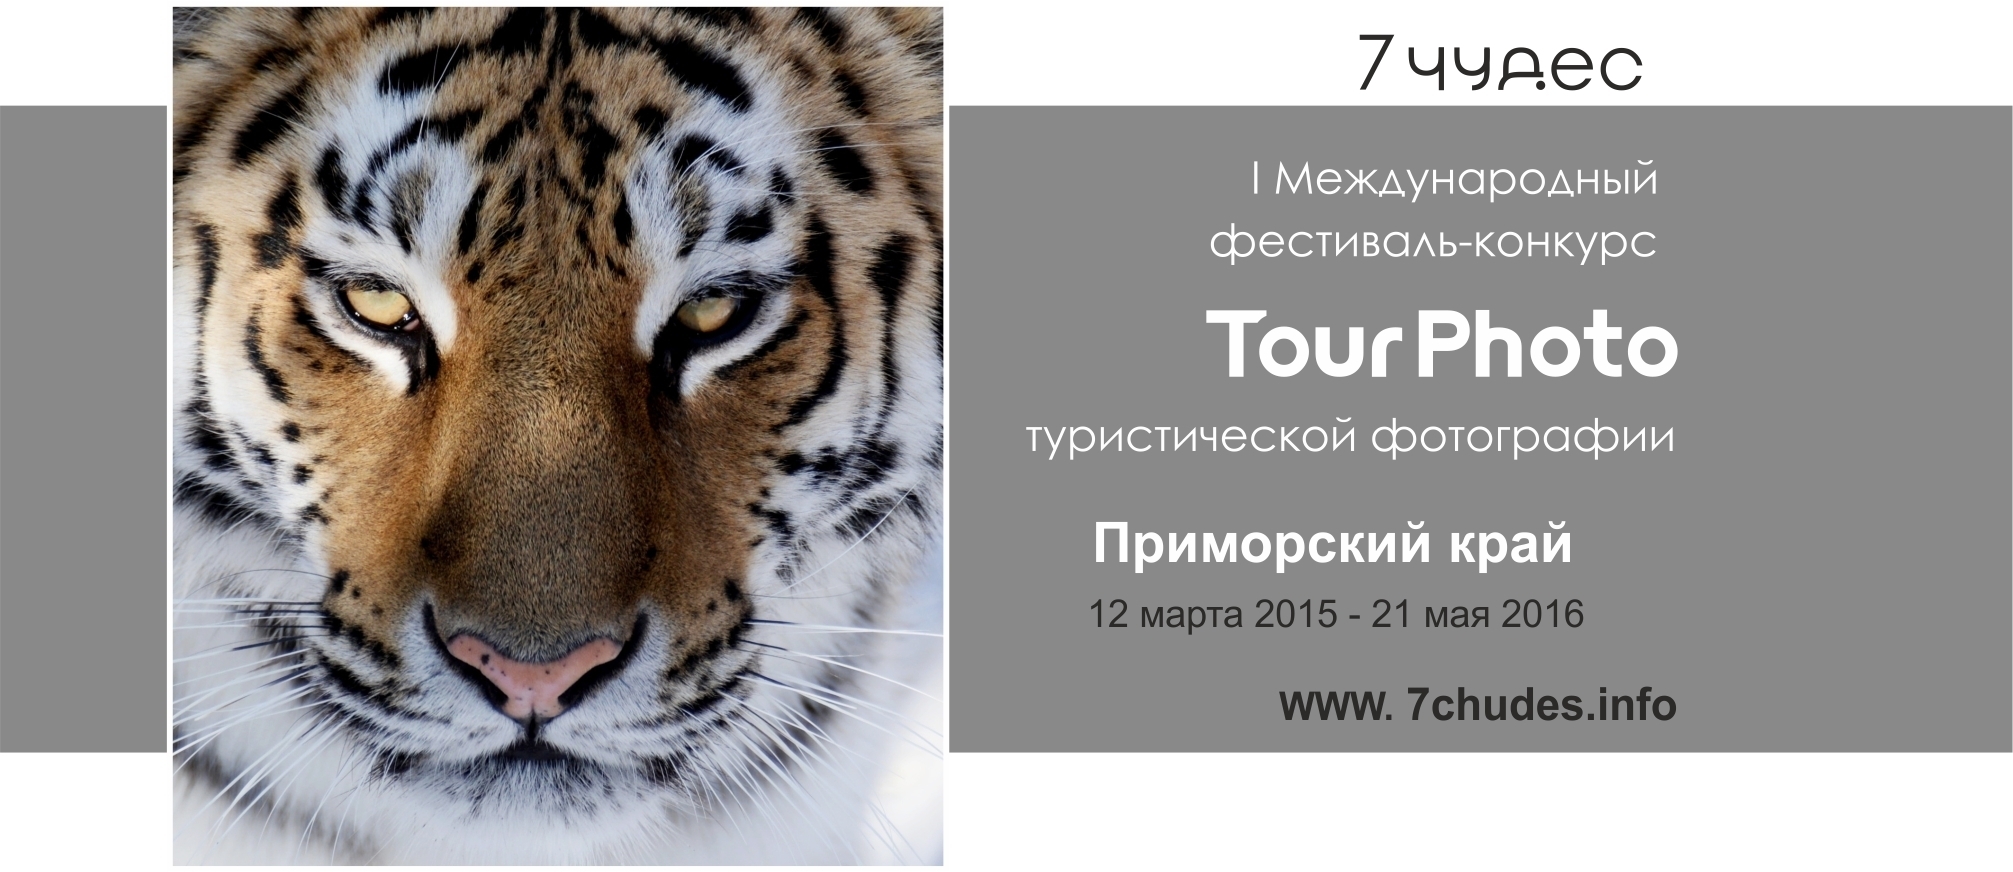 Фотоконкурс TourPhoto стартовал во Владивостоке